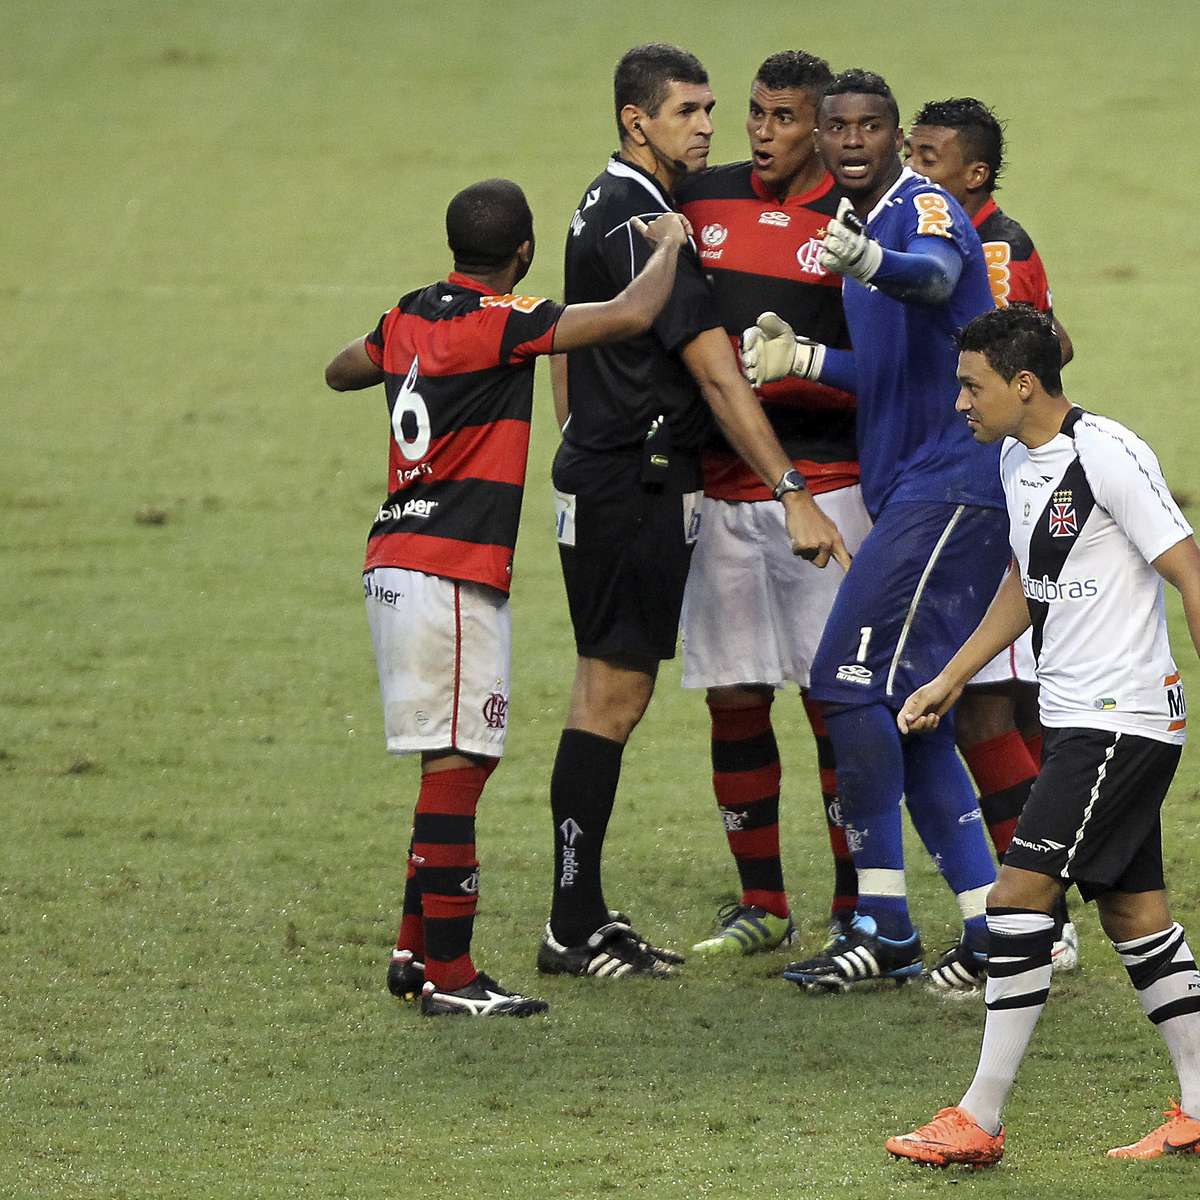 Vitória em amistoso, estreia de De la Cruz e empate no Carioca